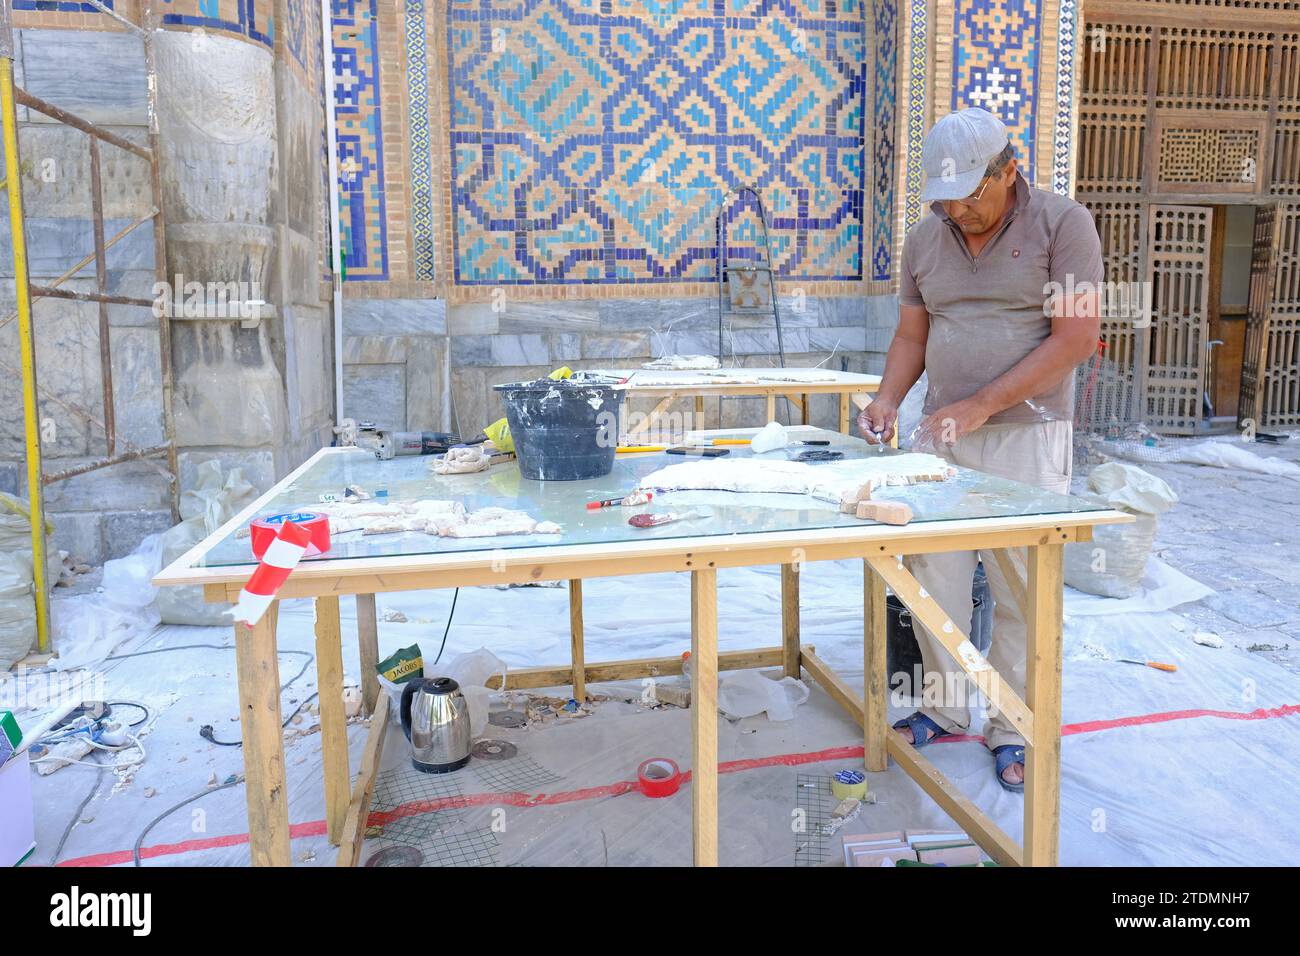 Lavoratori dell'Uzbekistan di Samarcanda che si preparano a rinnovare parti dei motivi decorati di piastrelle blu presso il Registan nell'agosto 2022 Foto Stock